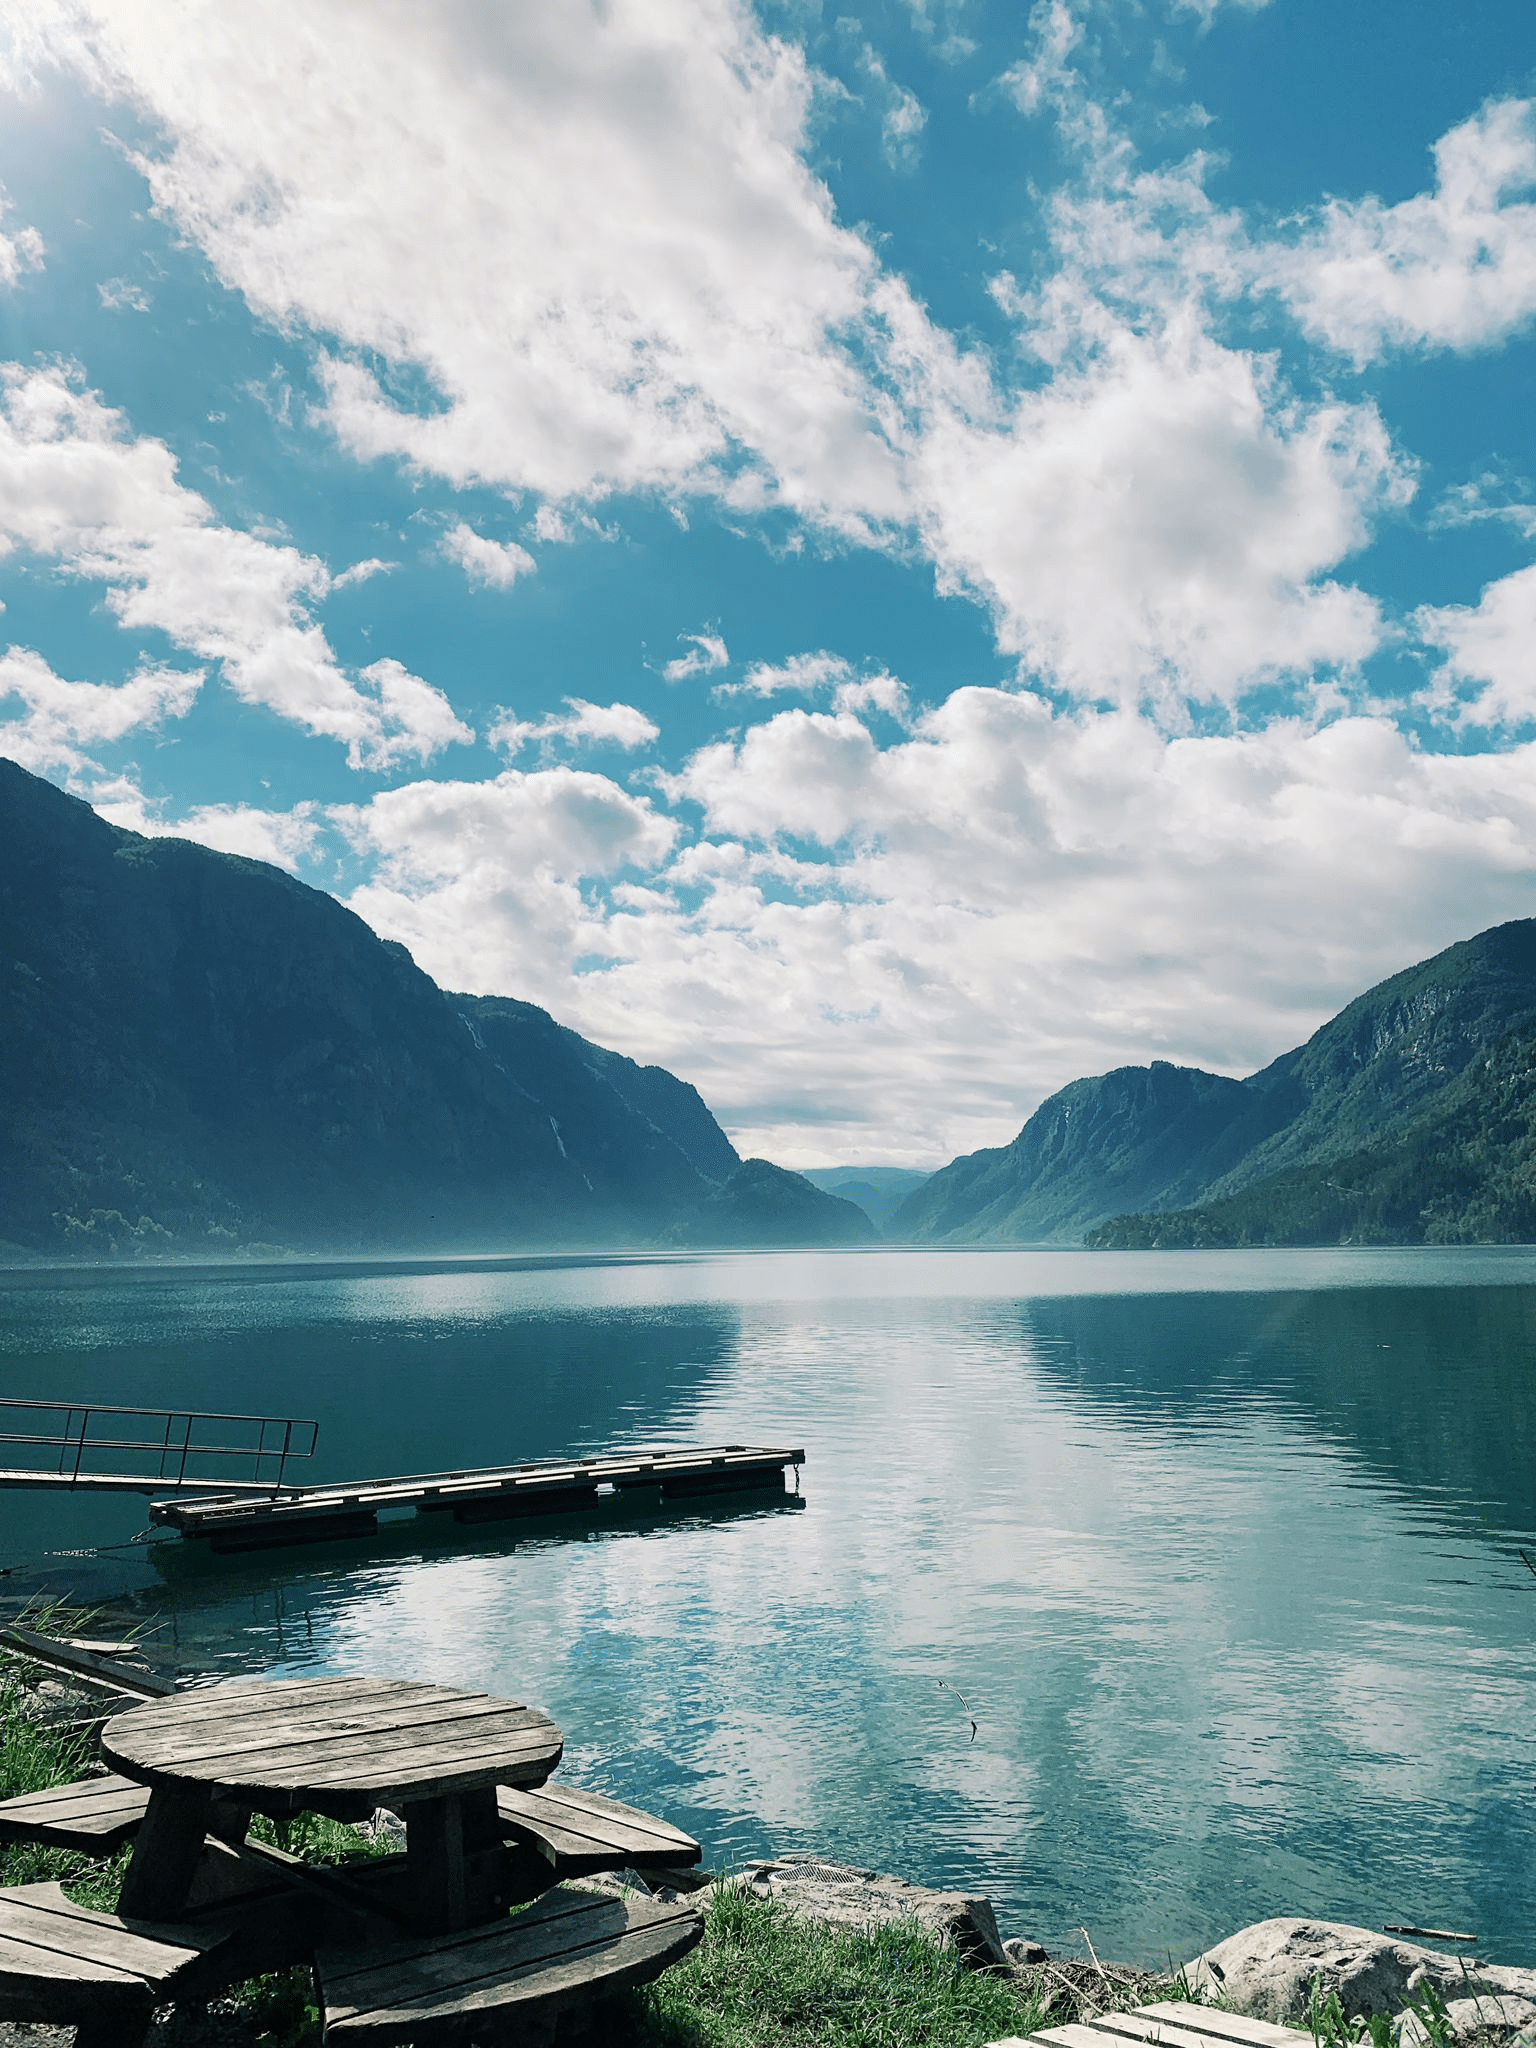 Kemp Trolltunga l Hardangerfjord